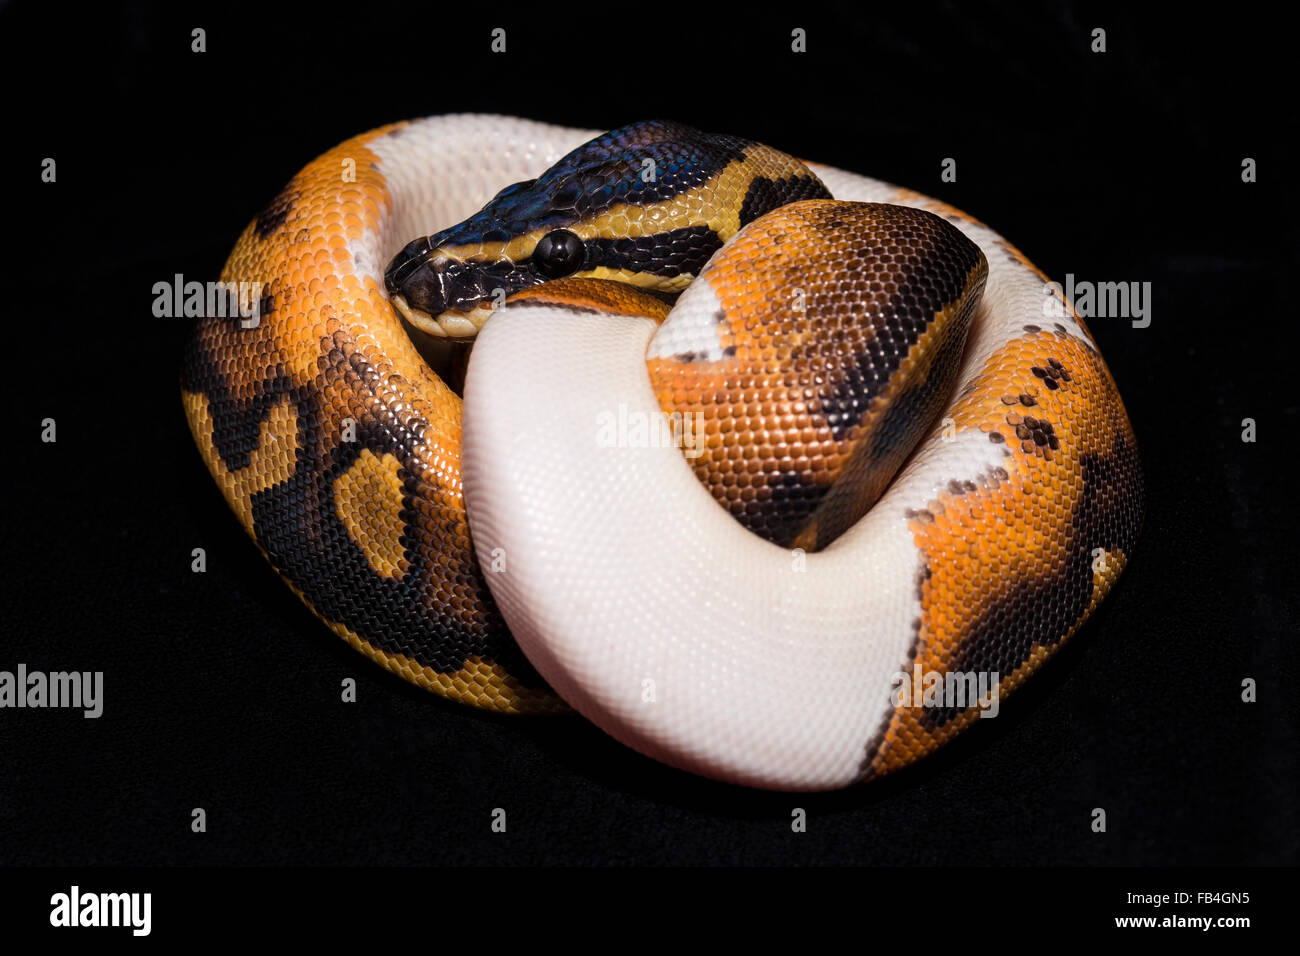 erwachsene ball pythons